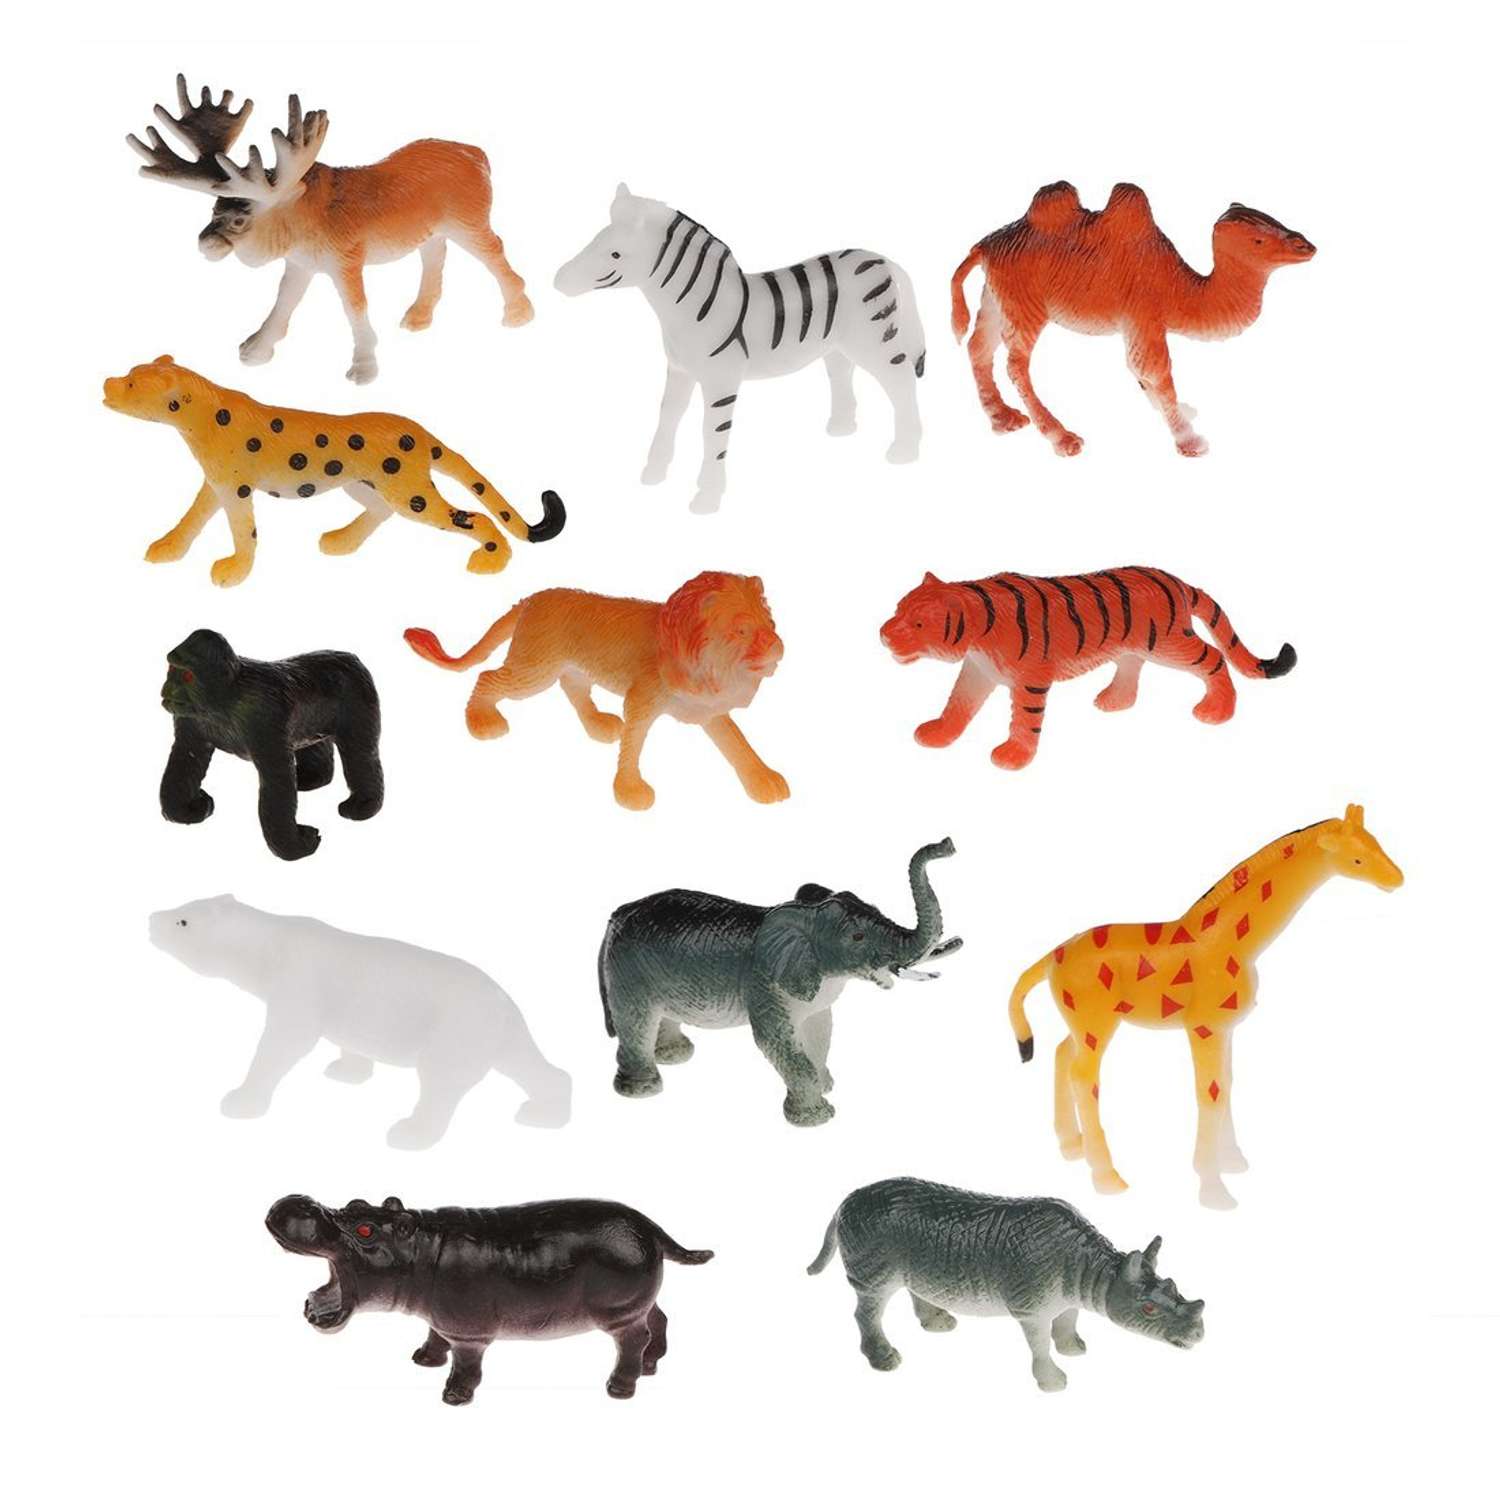 Фигурки животных Наша Игрушка набор игровой для развития и познания 12 зверят - фото 1